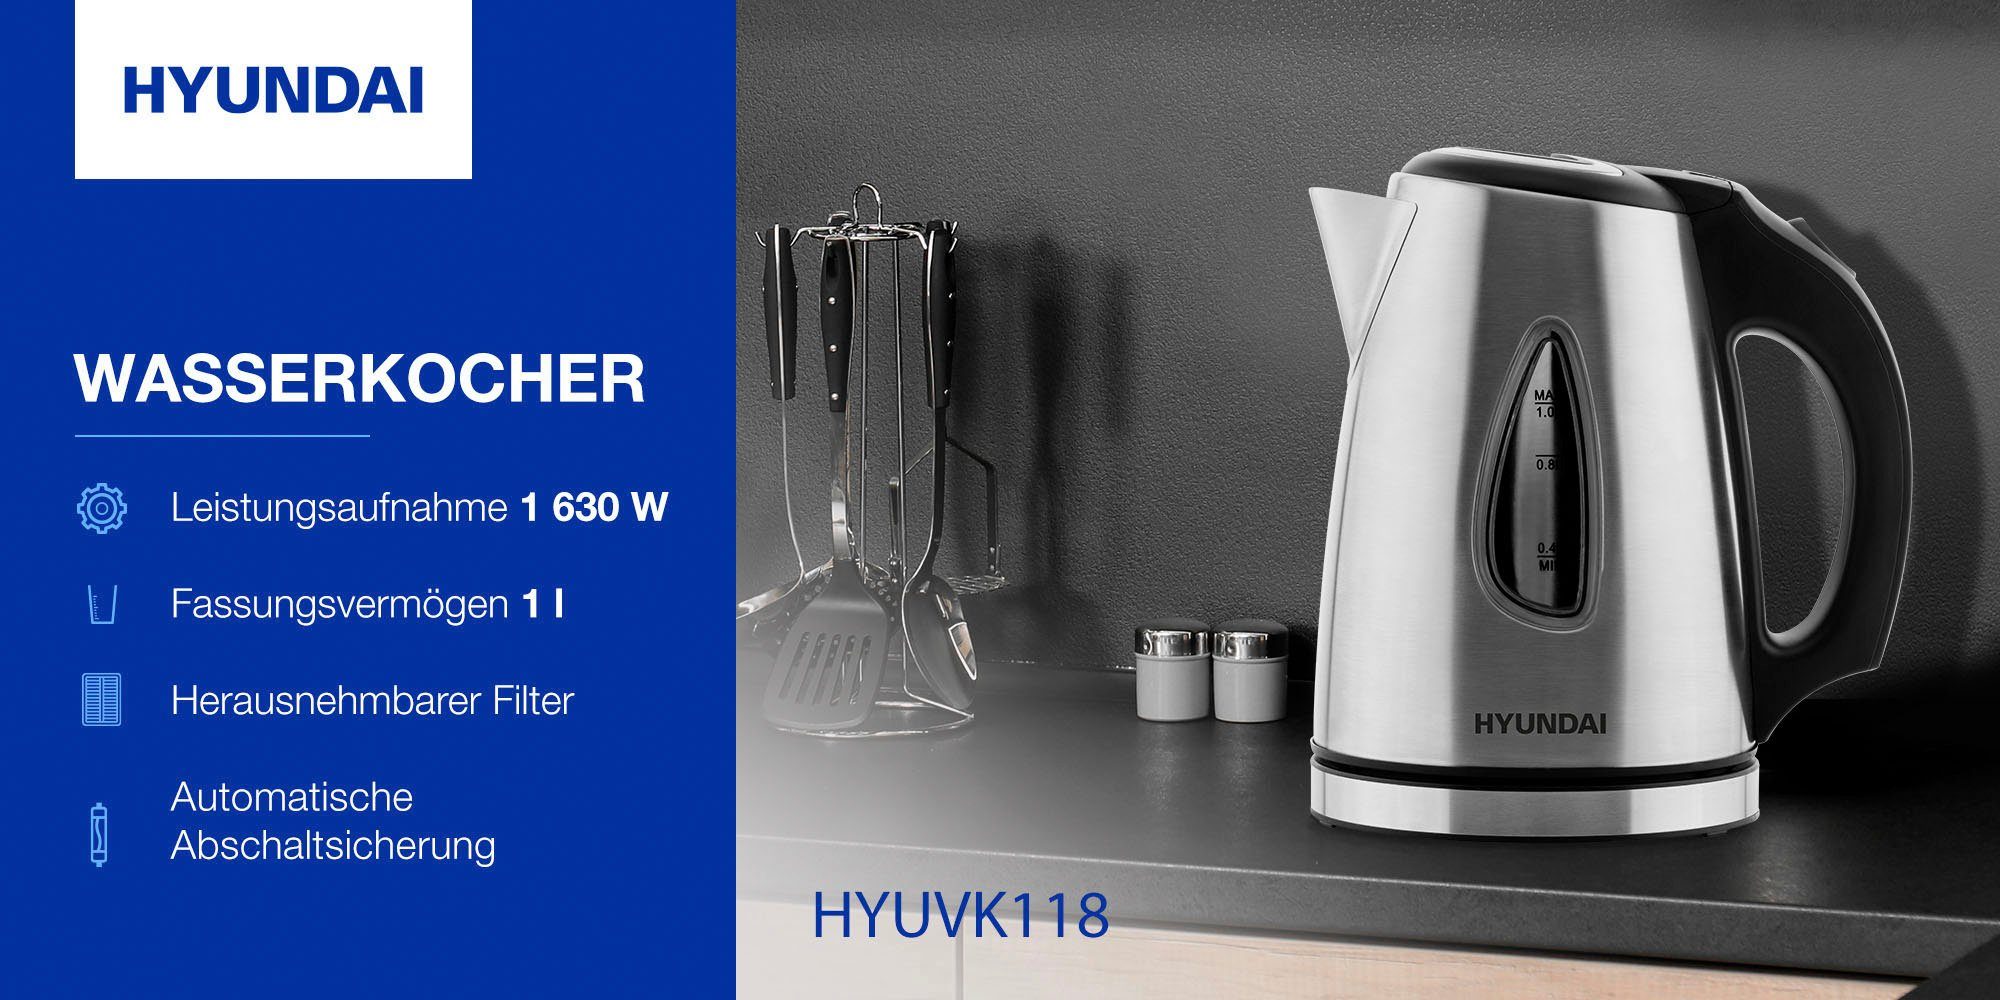 Hyundai Wasserkocher 1,0 Sockel l, W, 1630 Drehbarer Überhitzungsschutz, VK118, Abschaltautomatik